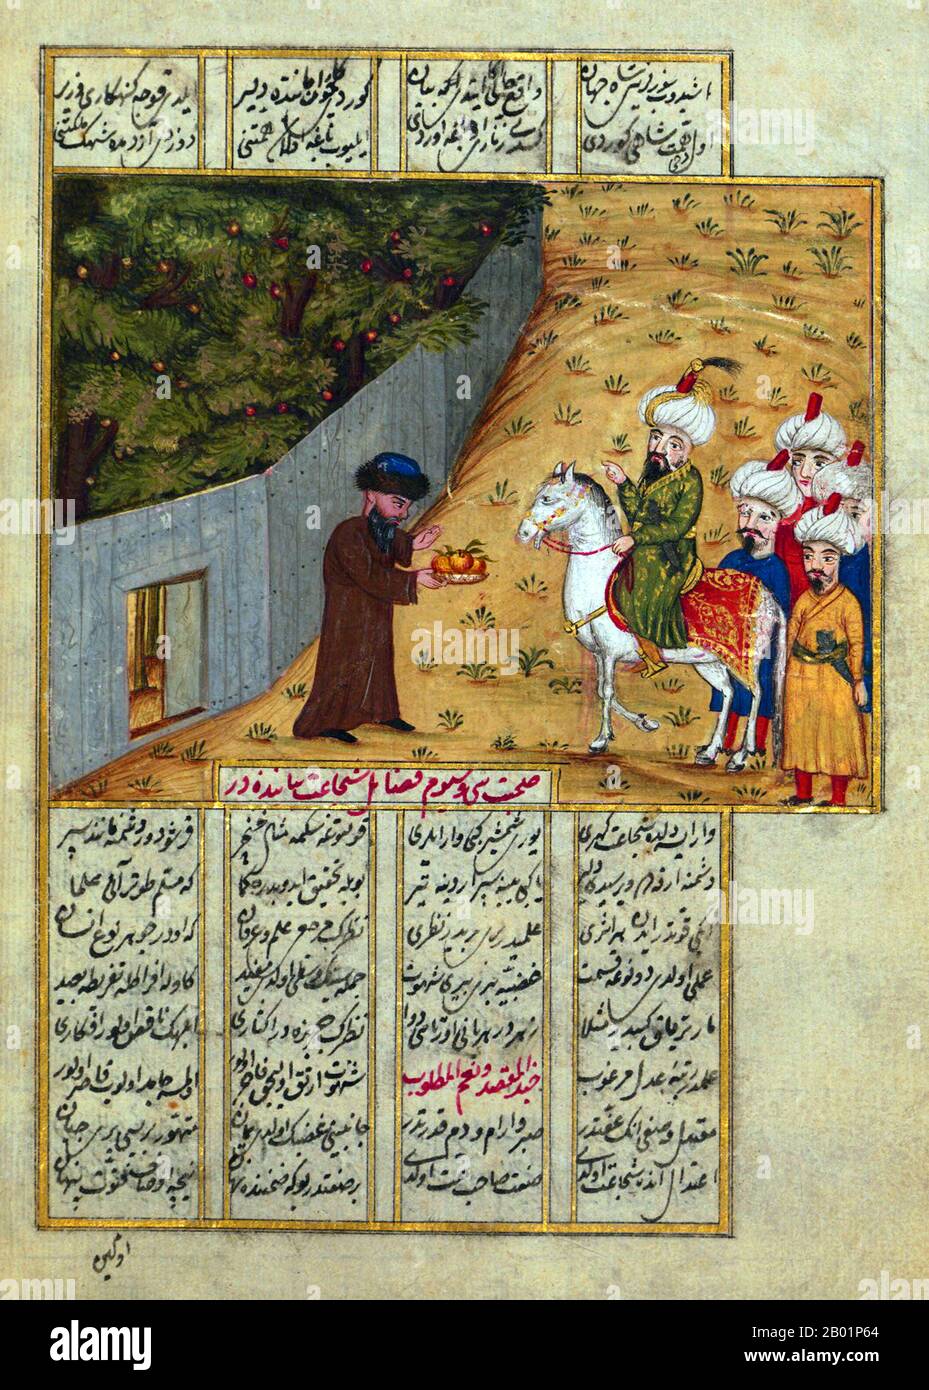 Iraq/Turchia: Il califfo abbaside al-Ma'mūn e i suoi soldati vengono accolti da un uomo con un vassoio di frutta. Dalla Khamsa di Neva'îzâde Atâyî (1583-1635), 1721. Abū Jaʿfar Abdullāh al-Māʾmūn ibn Harūn (13 settembre 786 - 9 agosto 833), anche detto Almamon, al-Maymun e el-Mâmoûn, fu un califfo abbaside che regnò dal 813 fino alla sua morte nel 833. Foto Stock